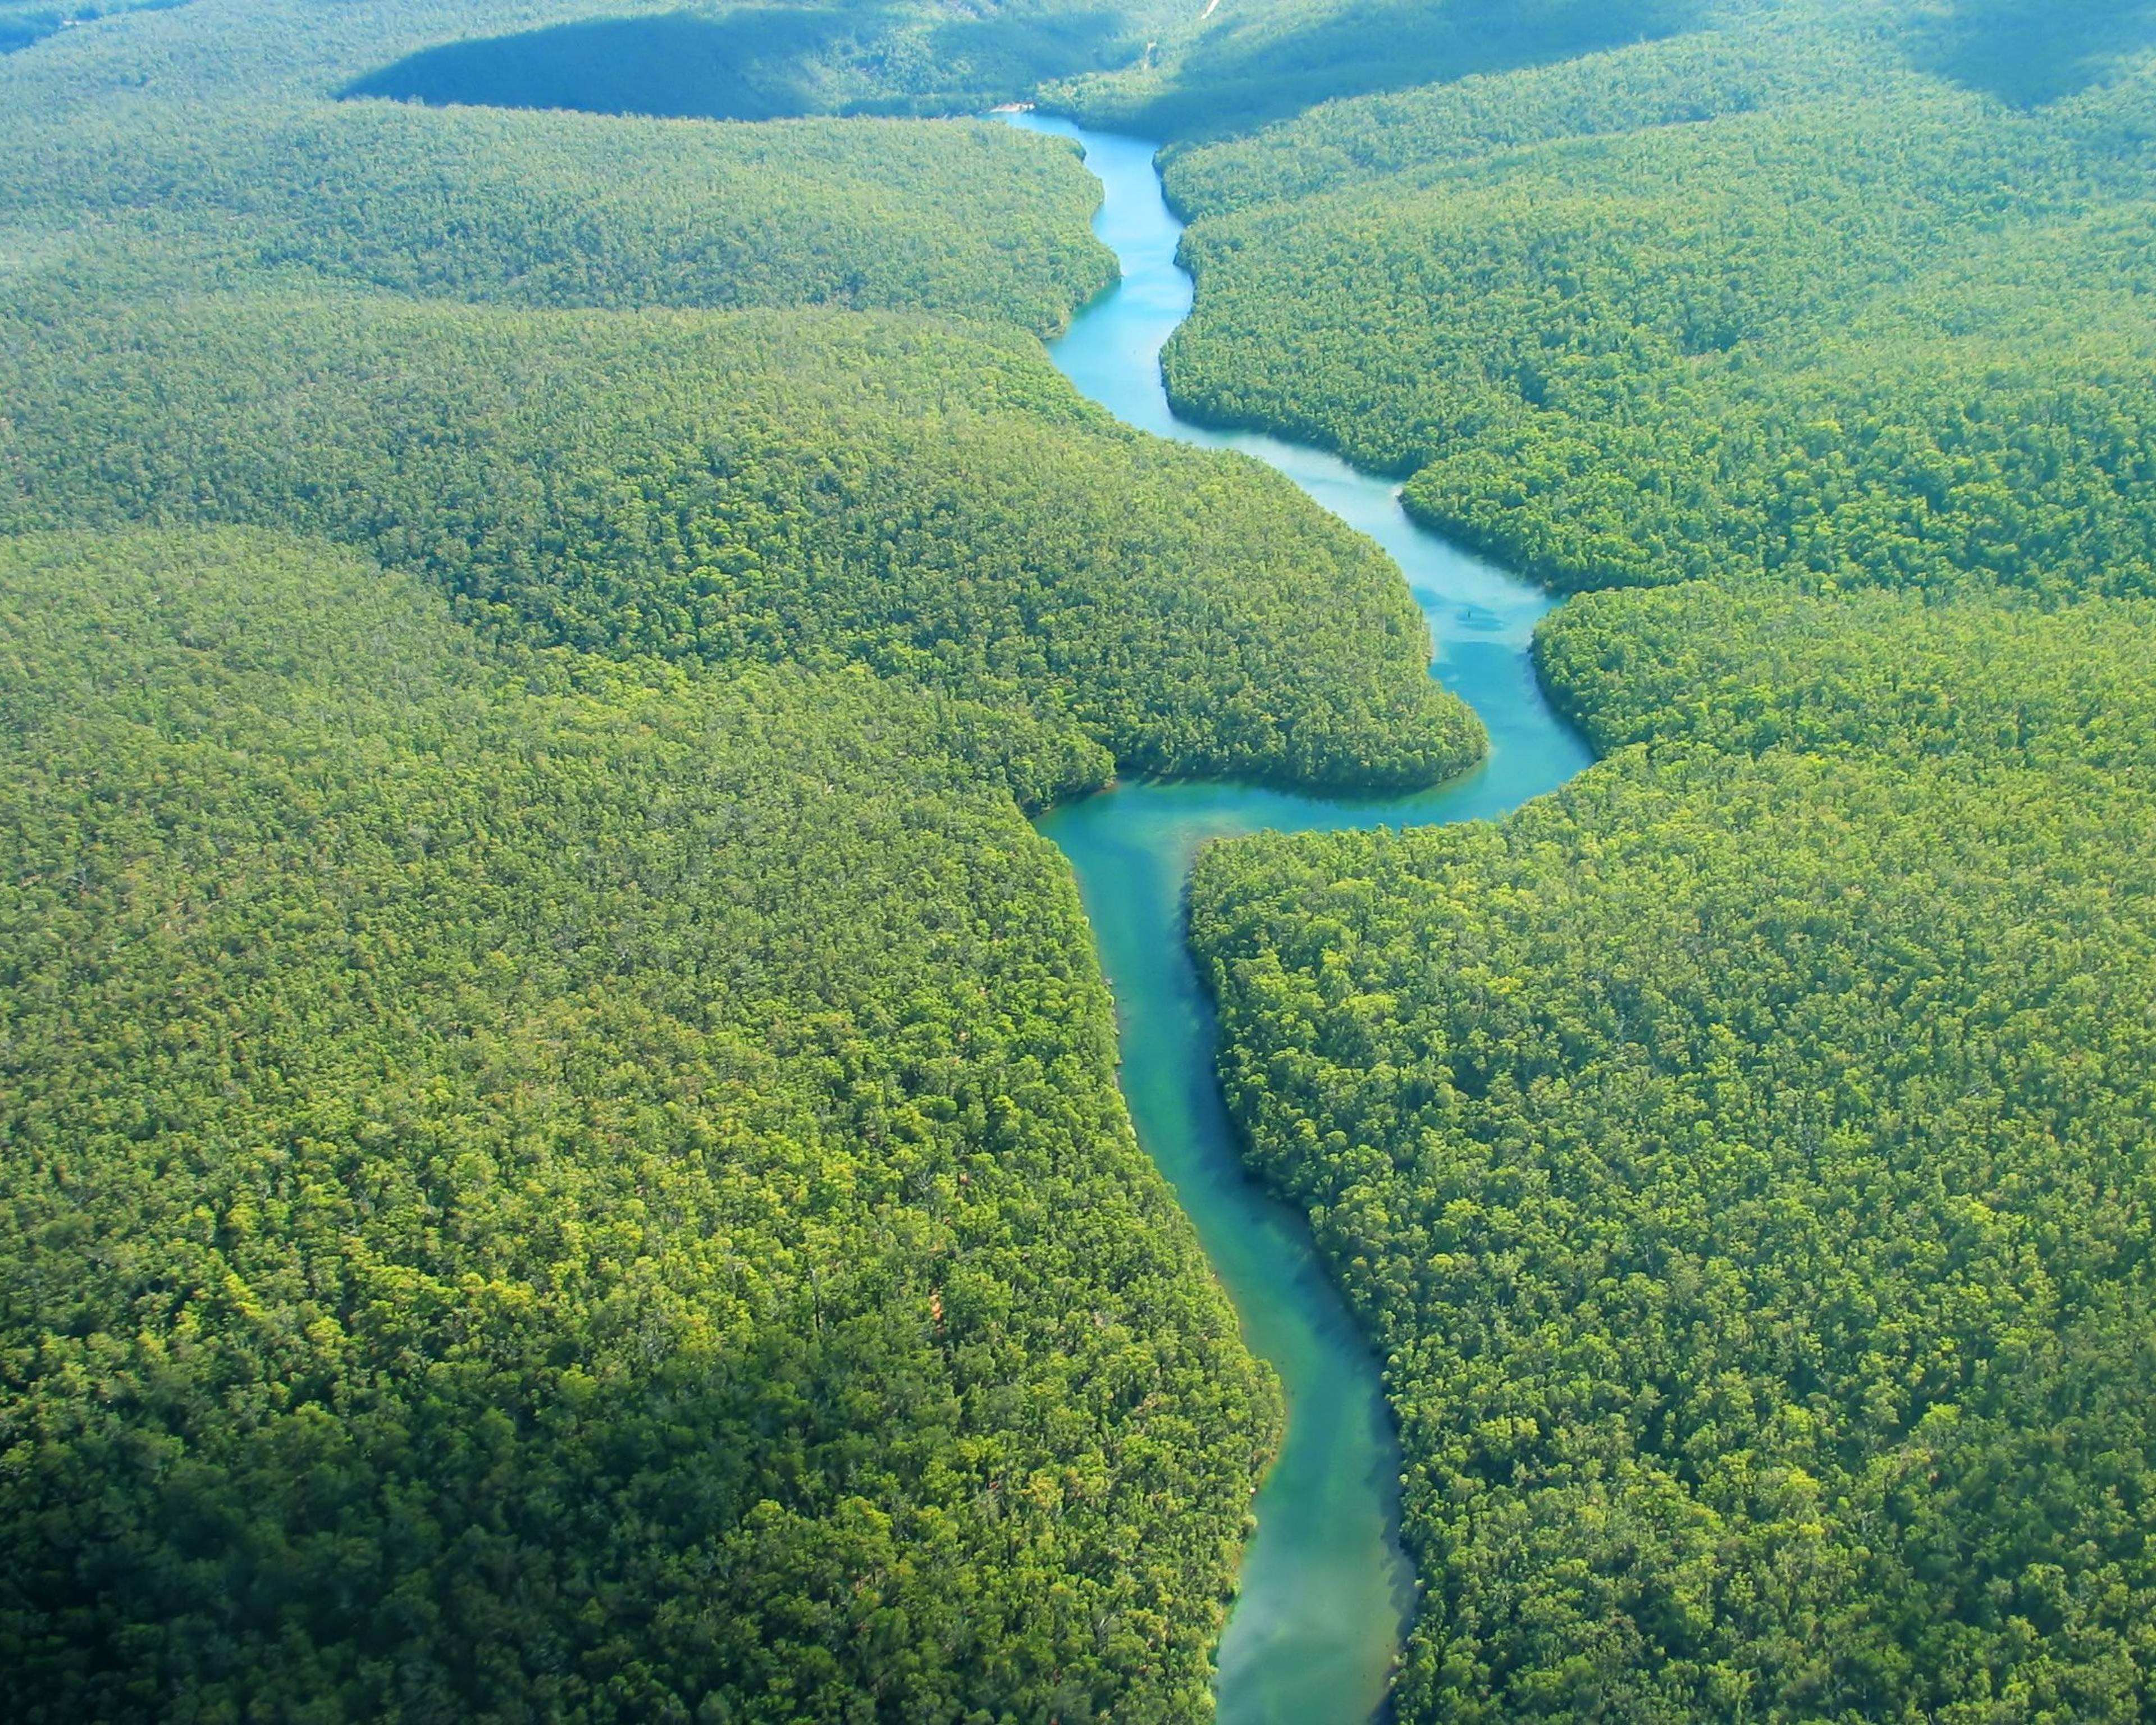 Giungla experience: seguendo il corso del Rio delle Amazzoni